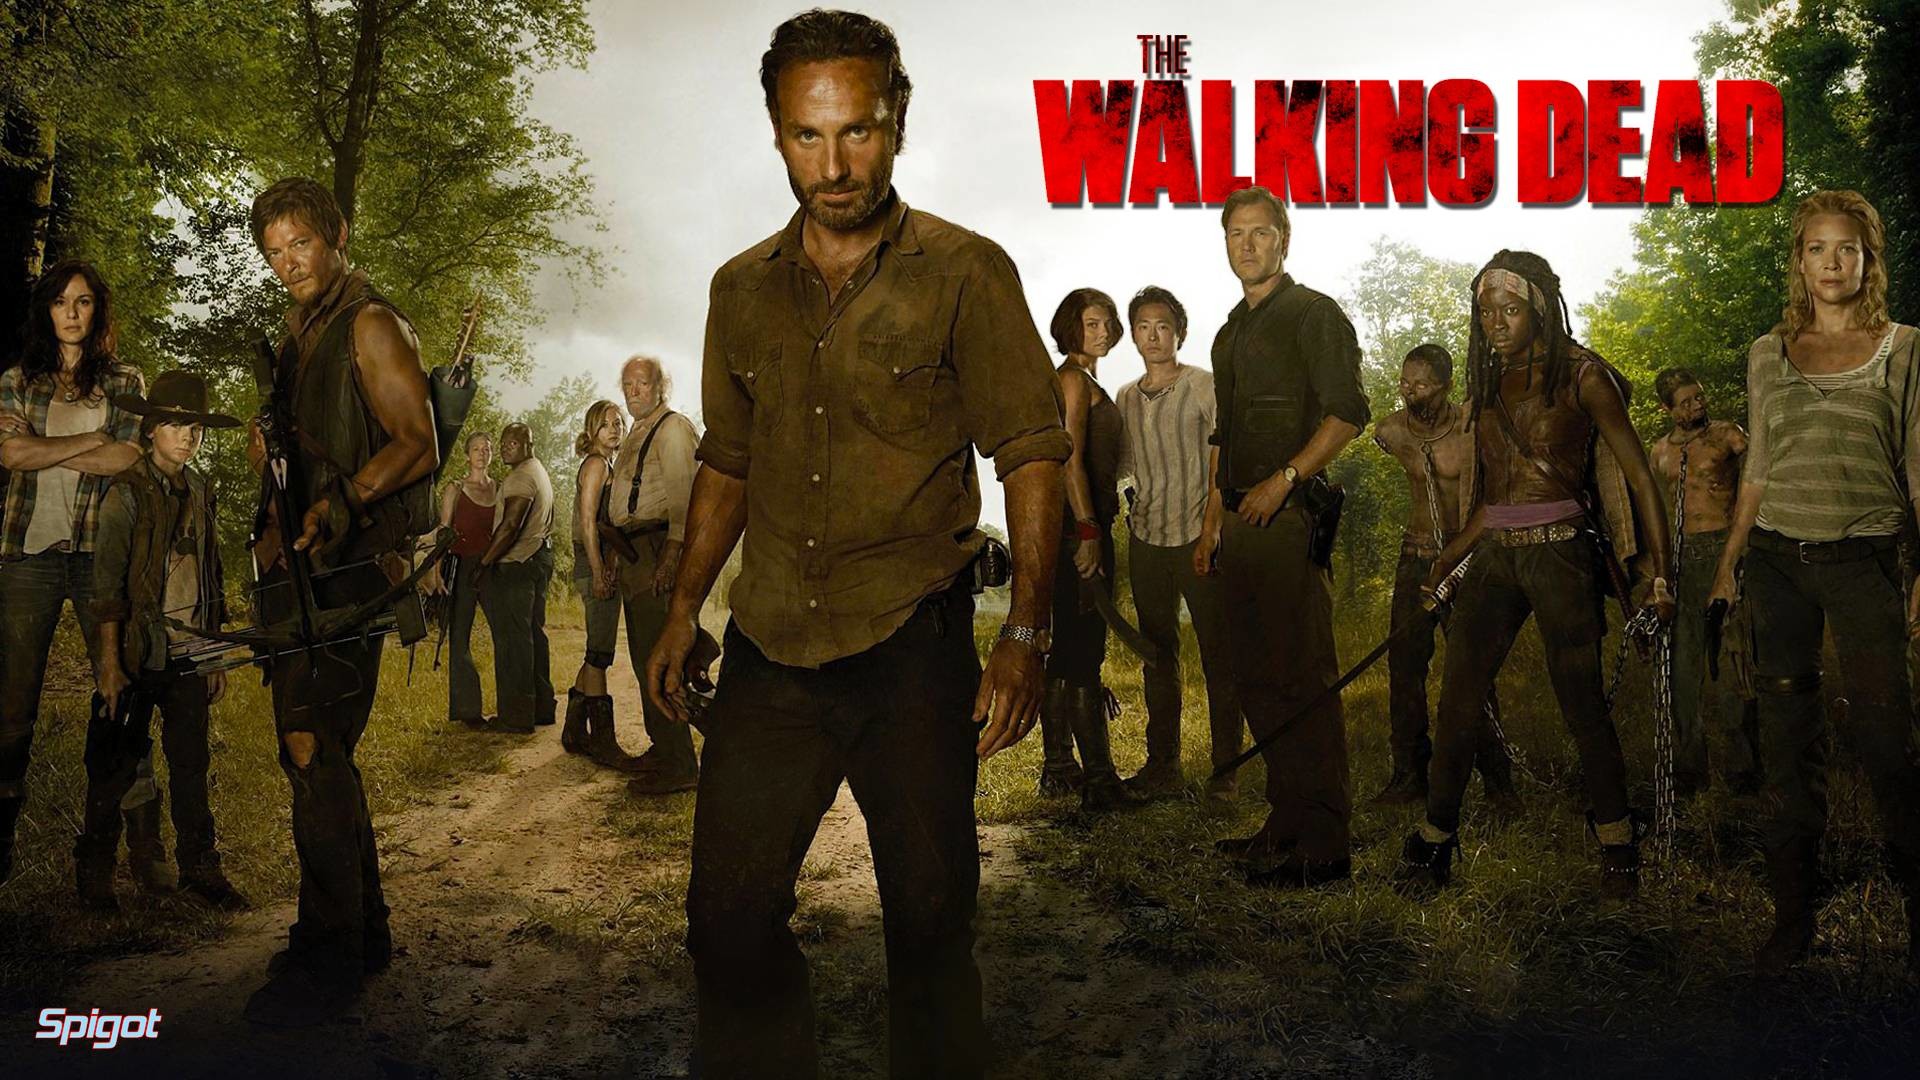 The Walking Dead Season 4 Wallpaper | Wallpaper Download